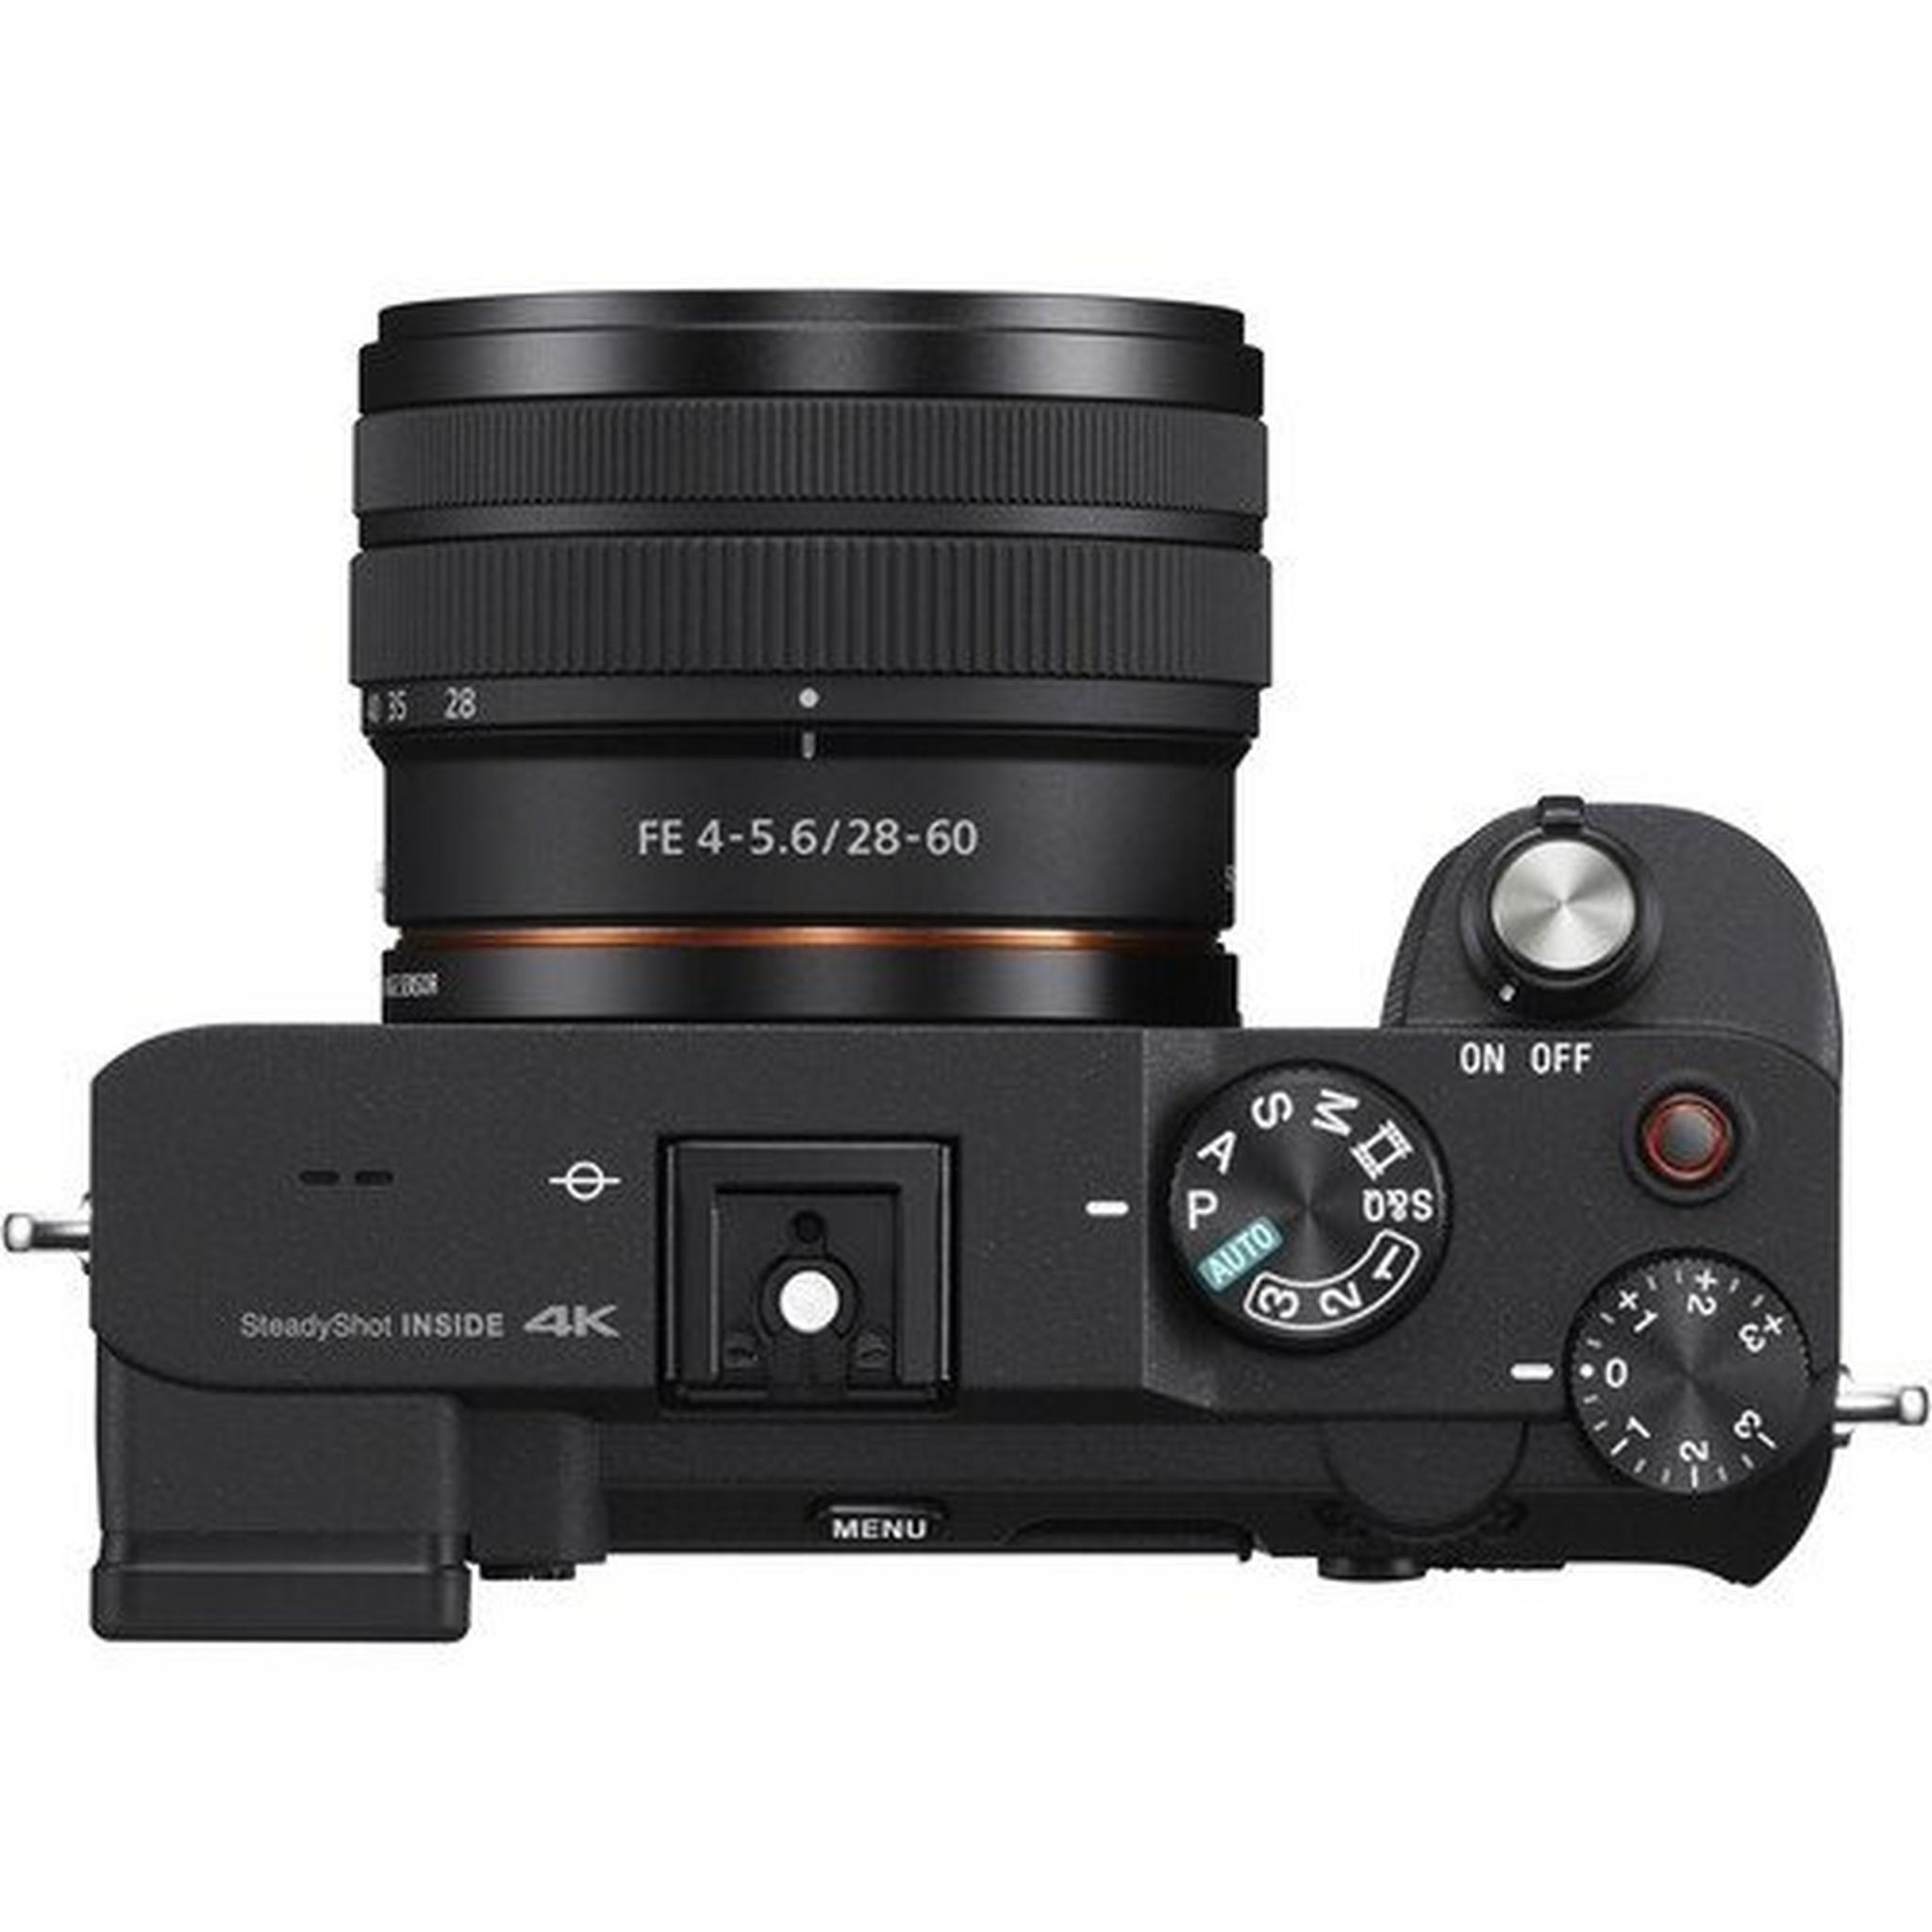 كاميرا سوني الفا ايه 7 سي الرقمية بدون مرآه مع عدسة 28-60 ملم - أسود